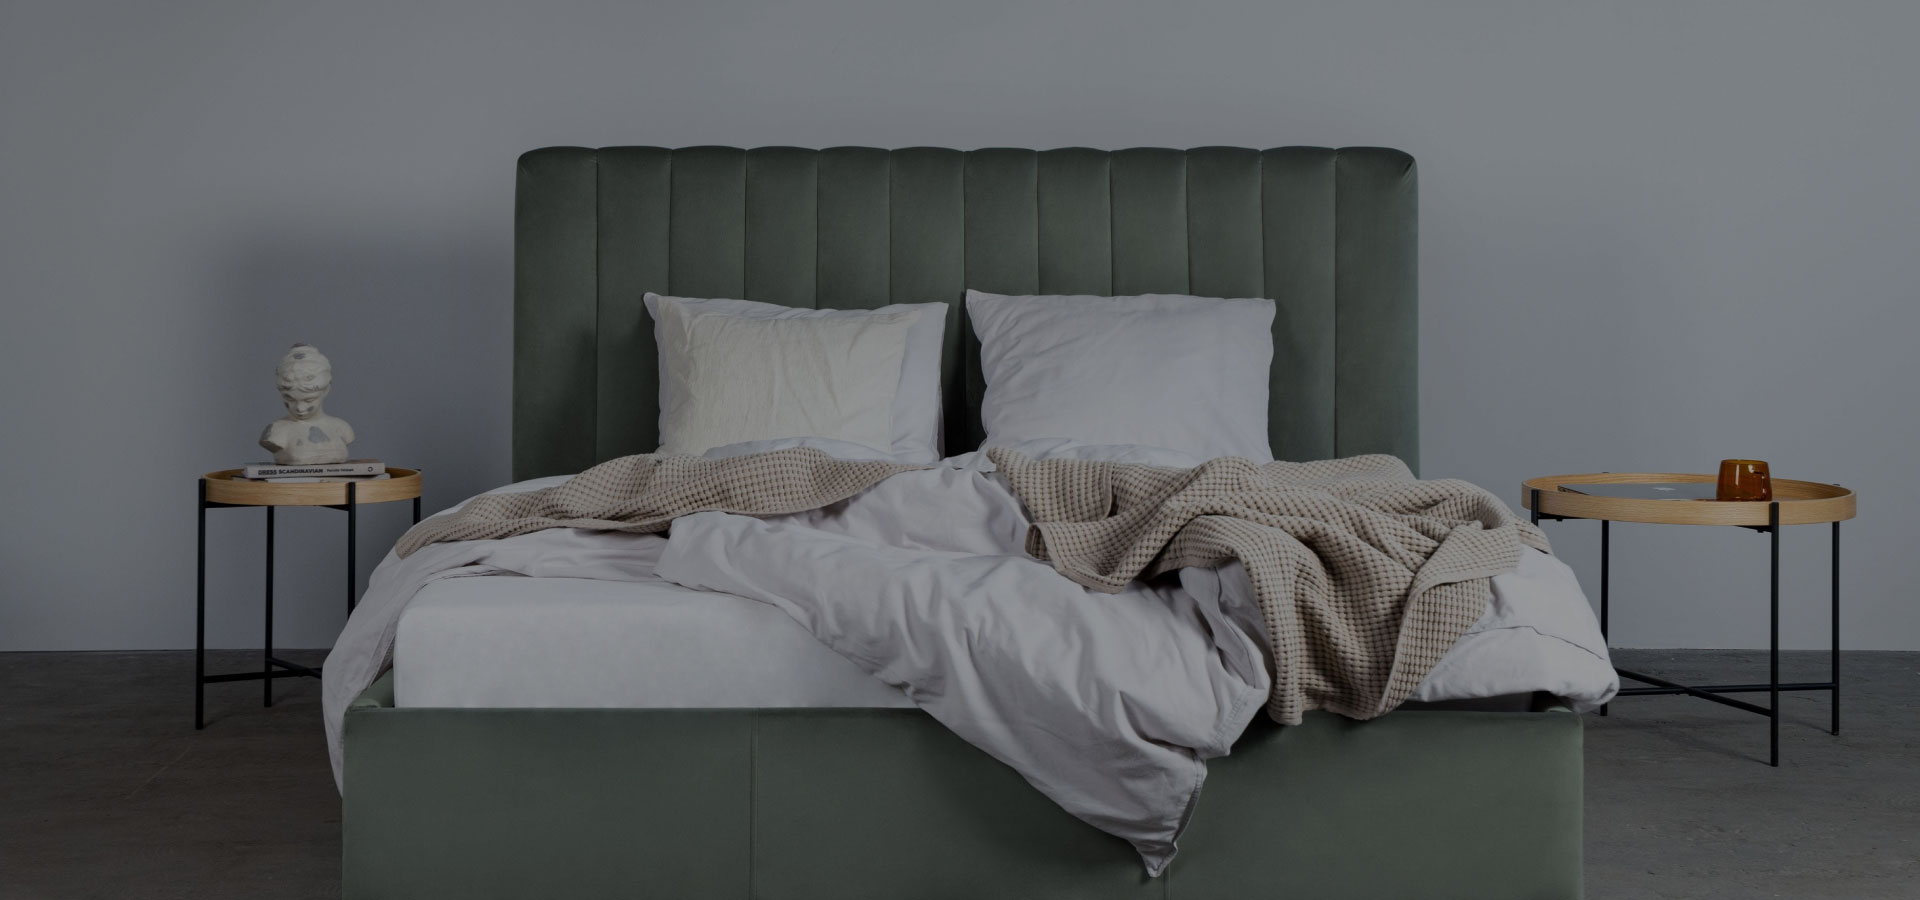 Pistacjowo-zielone łóżko z weluru z wysokim zagłówkiem z pionowymi przeszyciami. Na łózku widoczna pościel i poduszki. Po obu stronach łóżka stoliki na metalowych nogach z drewnianymi blatami